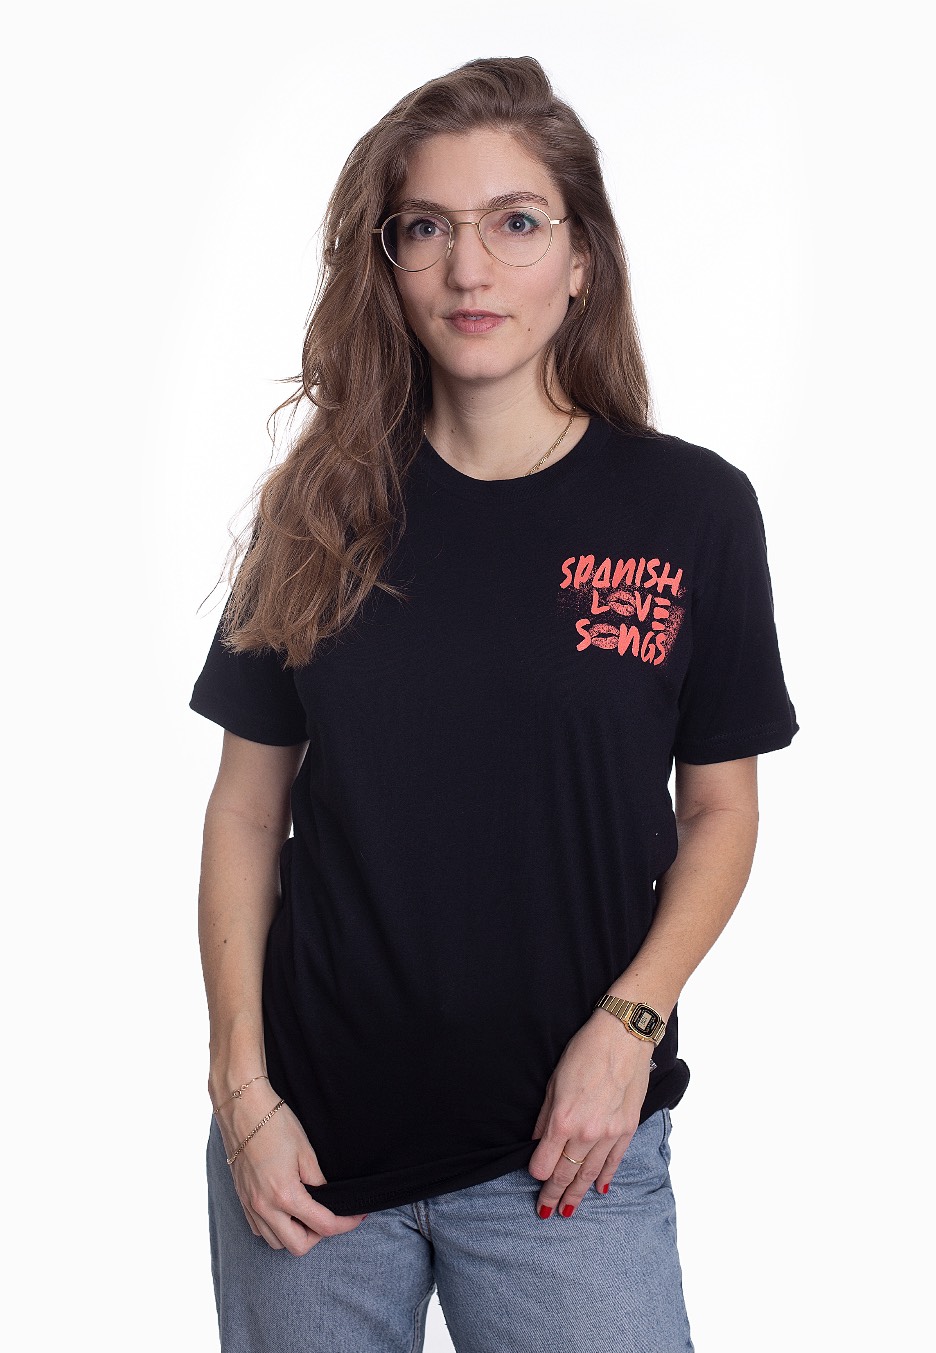 Spanish Love Songs - Trash - - T-Shirts